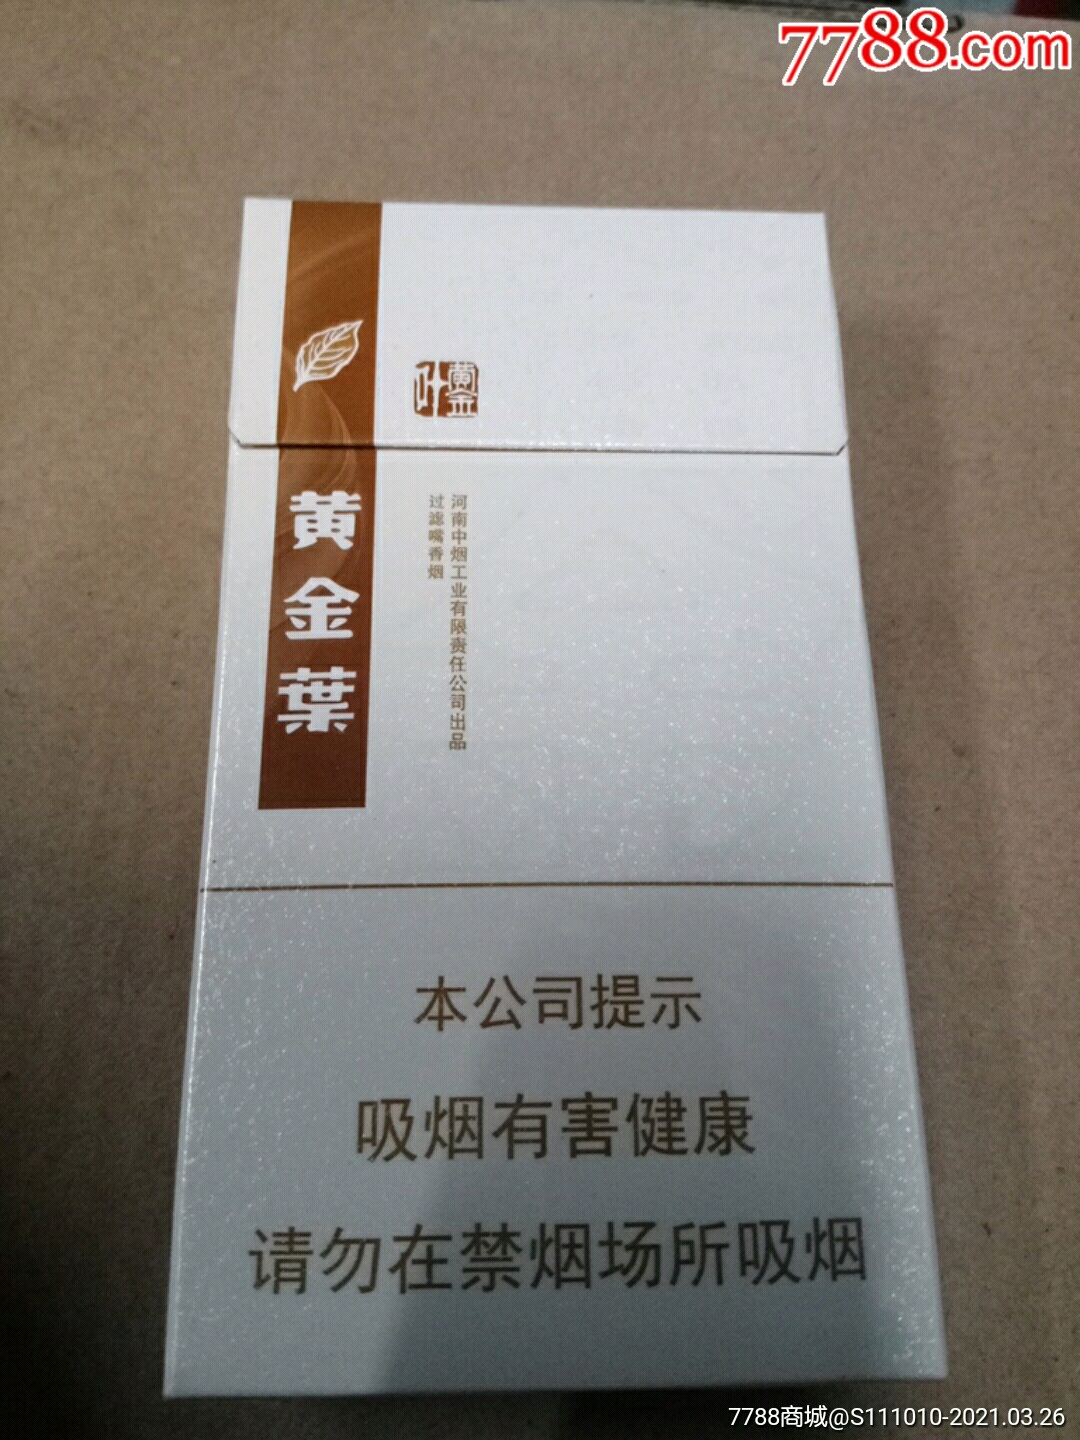 黄金叶,白版-价格:2.0000元-se79155827-烟标/烟盒